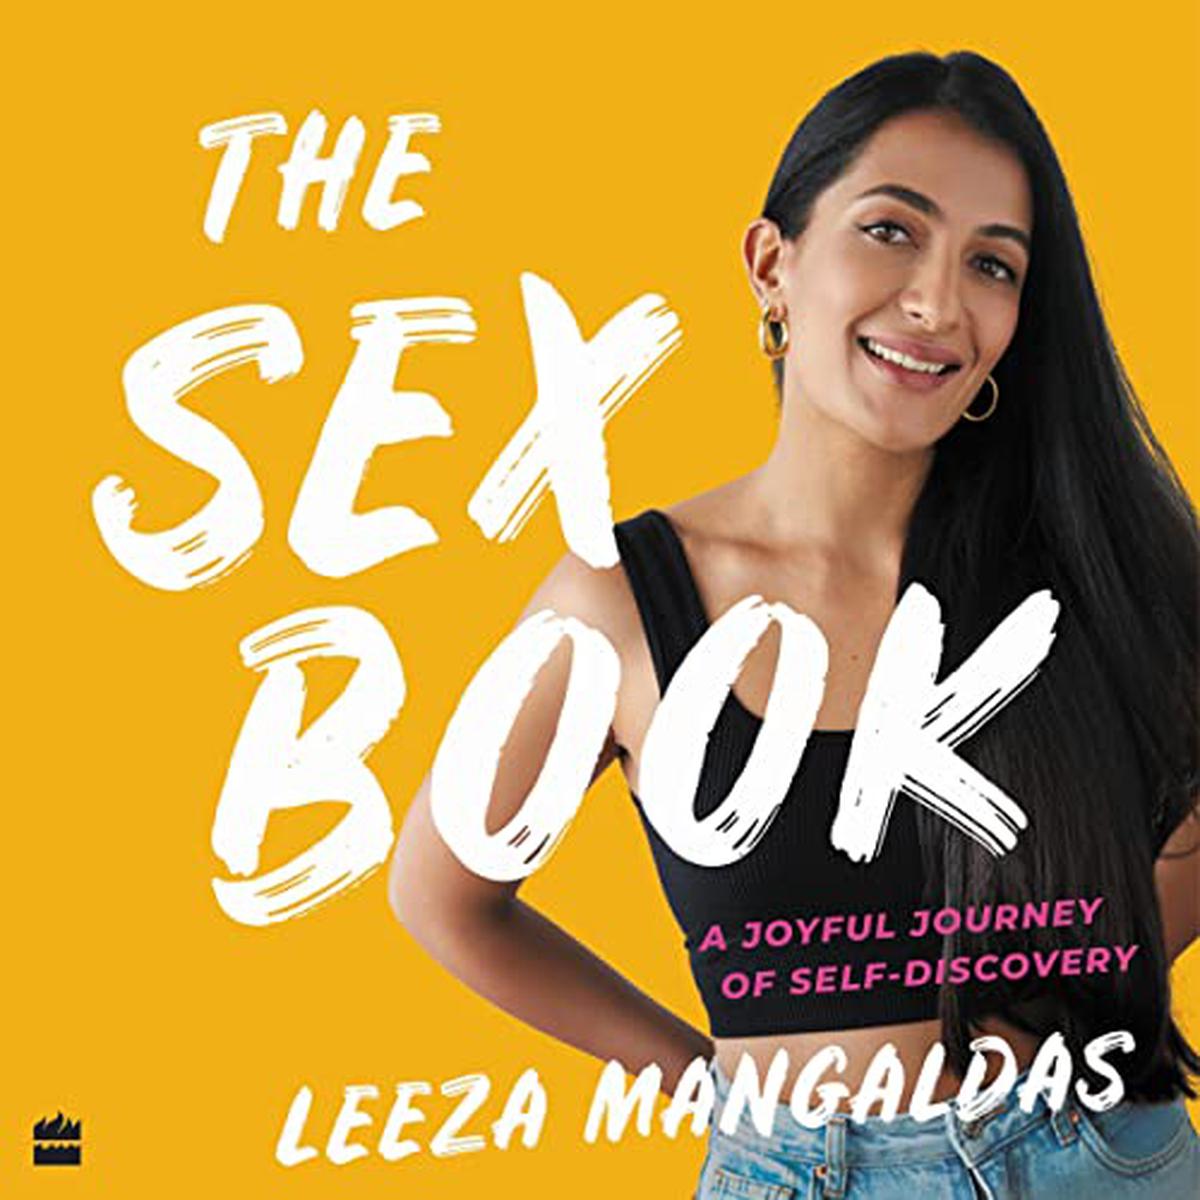 Leeza Mangaldas’s book